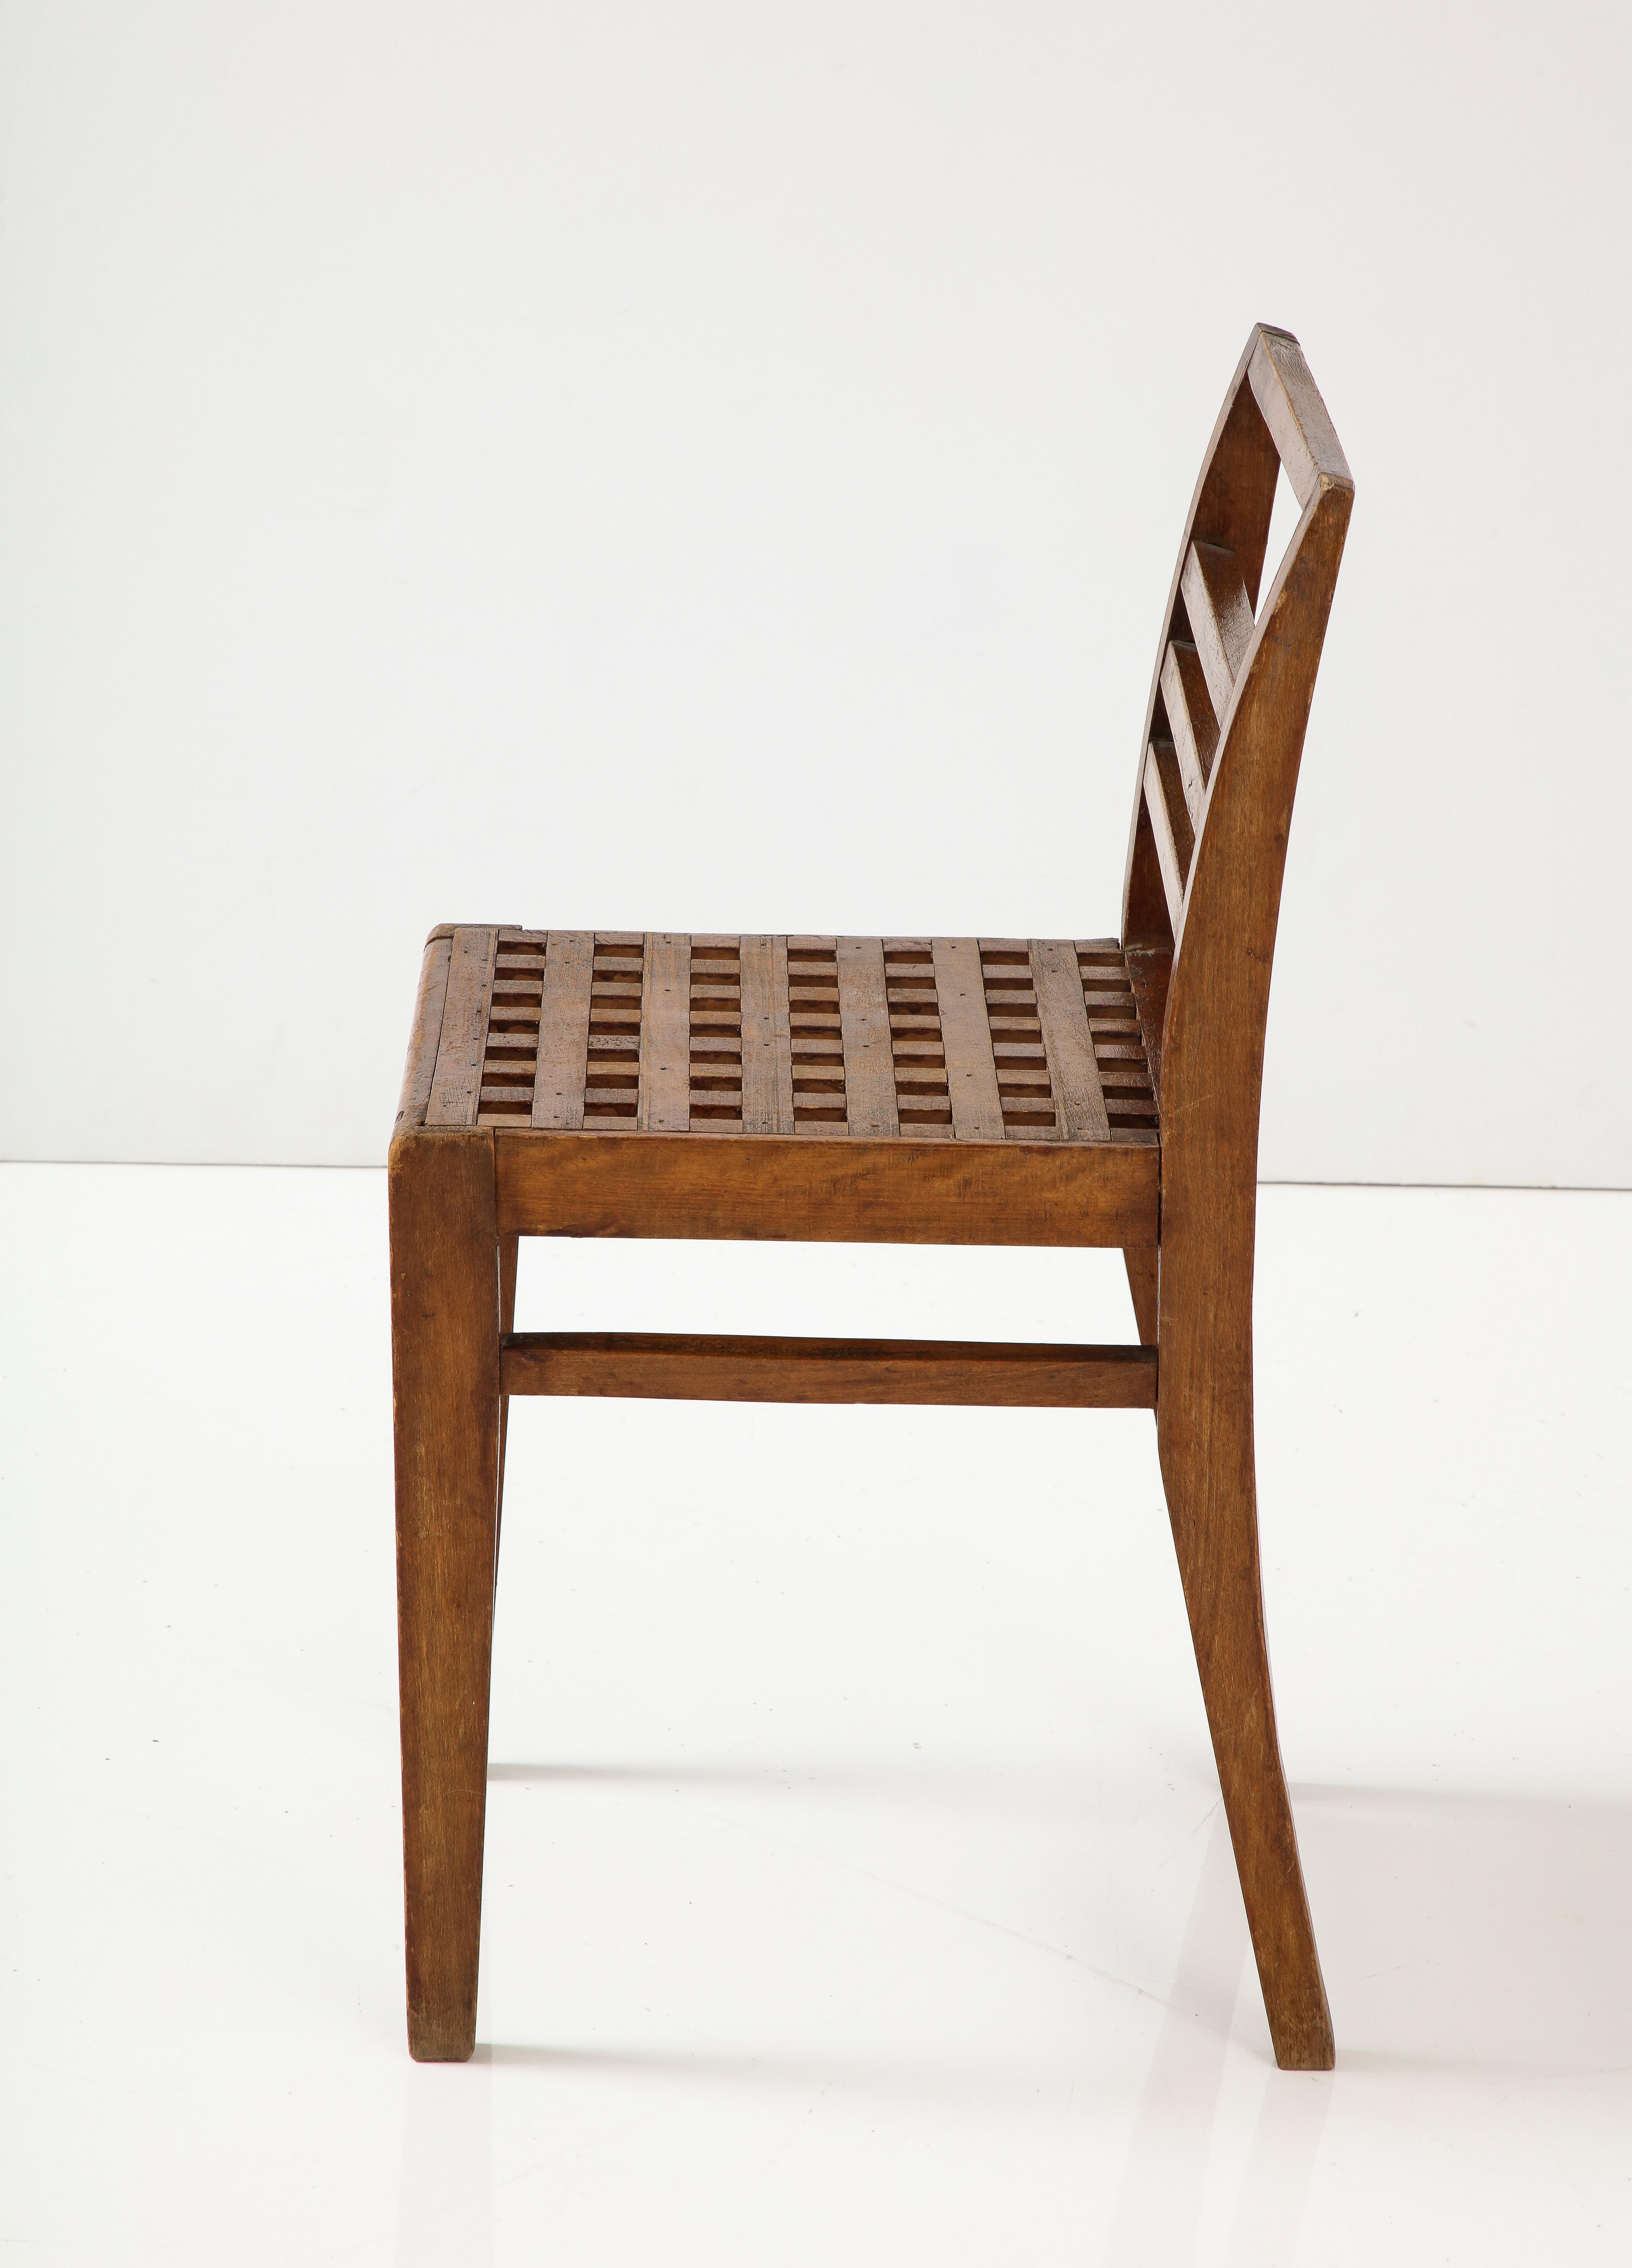 René Gabriel (1890-1950)
Early chair, France, circa 1941, Mood. 103, ‘Service des Constructions Provisoires’
Oak/Elm

Measures: H 29.75, W 14.75, D 15.25 in.